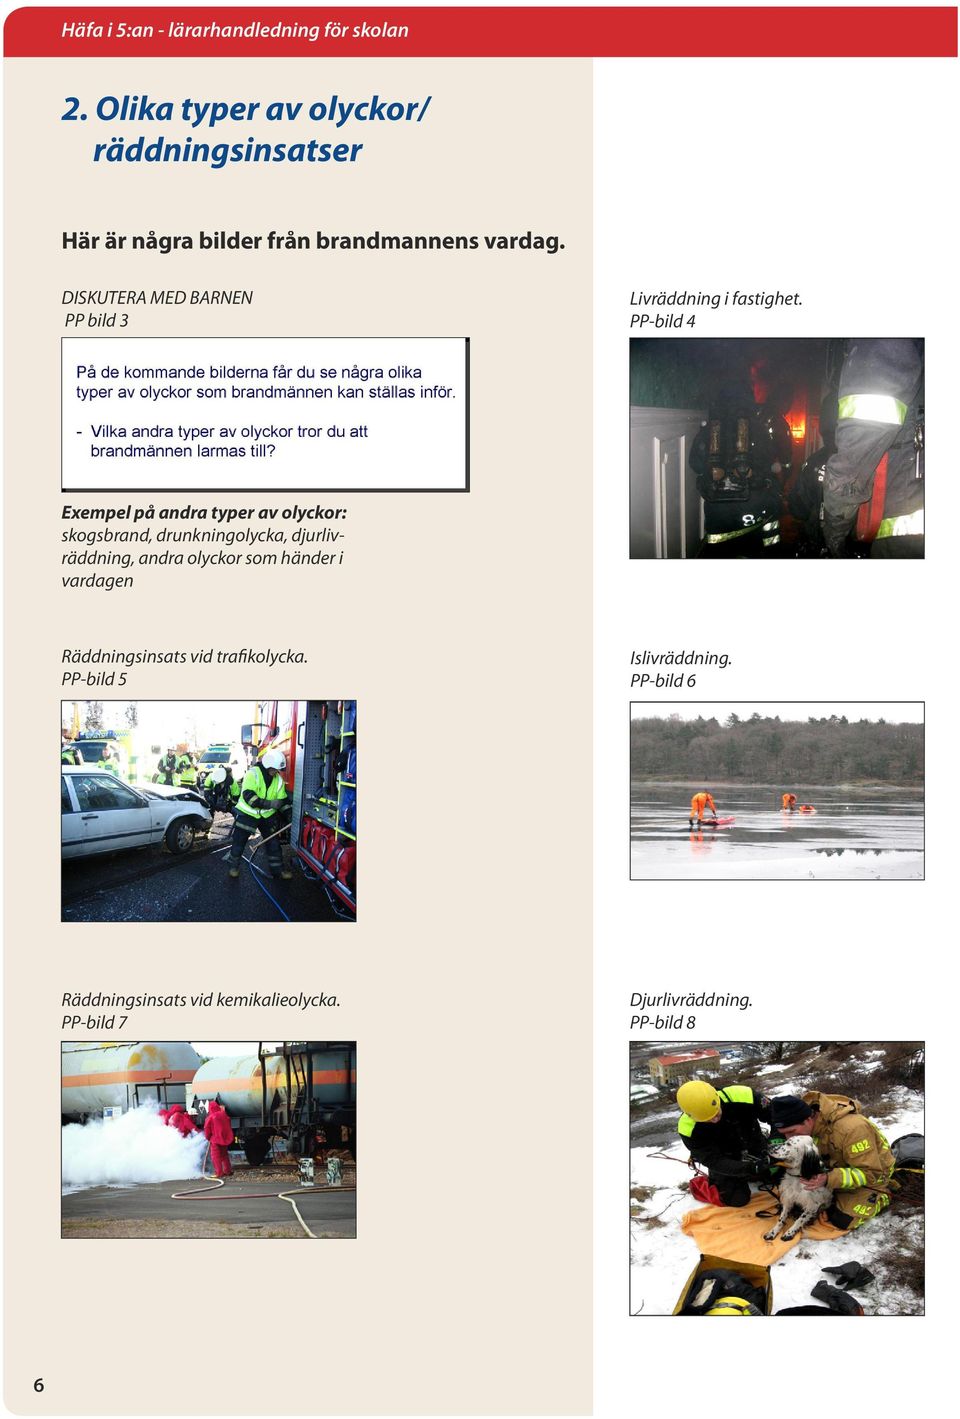 PP-bild 4 Exempel på andra typer av olyckor: skogsbrand, drunkningolycka, djurlivräddning, andra olyckor